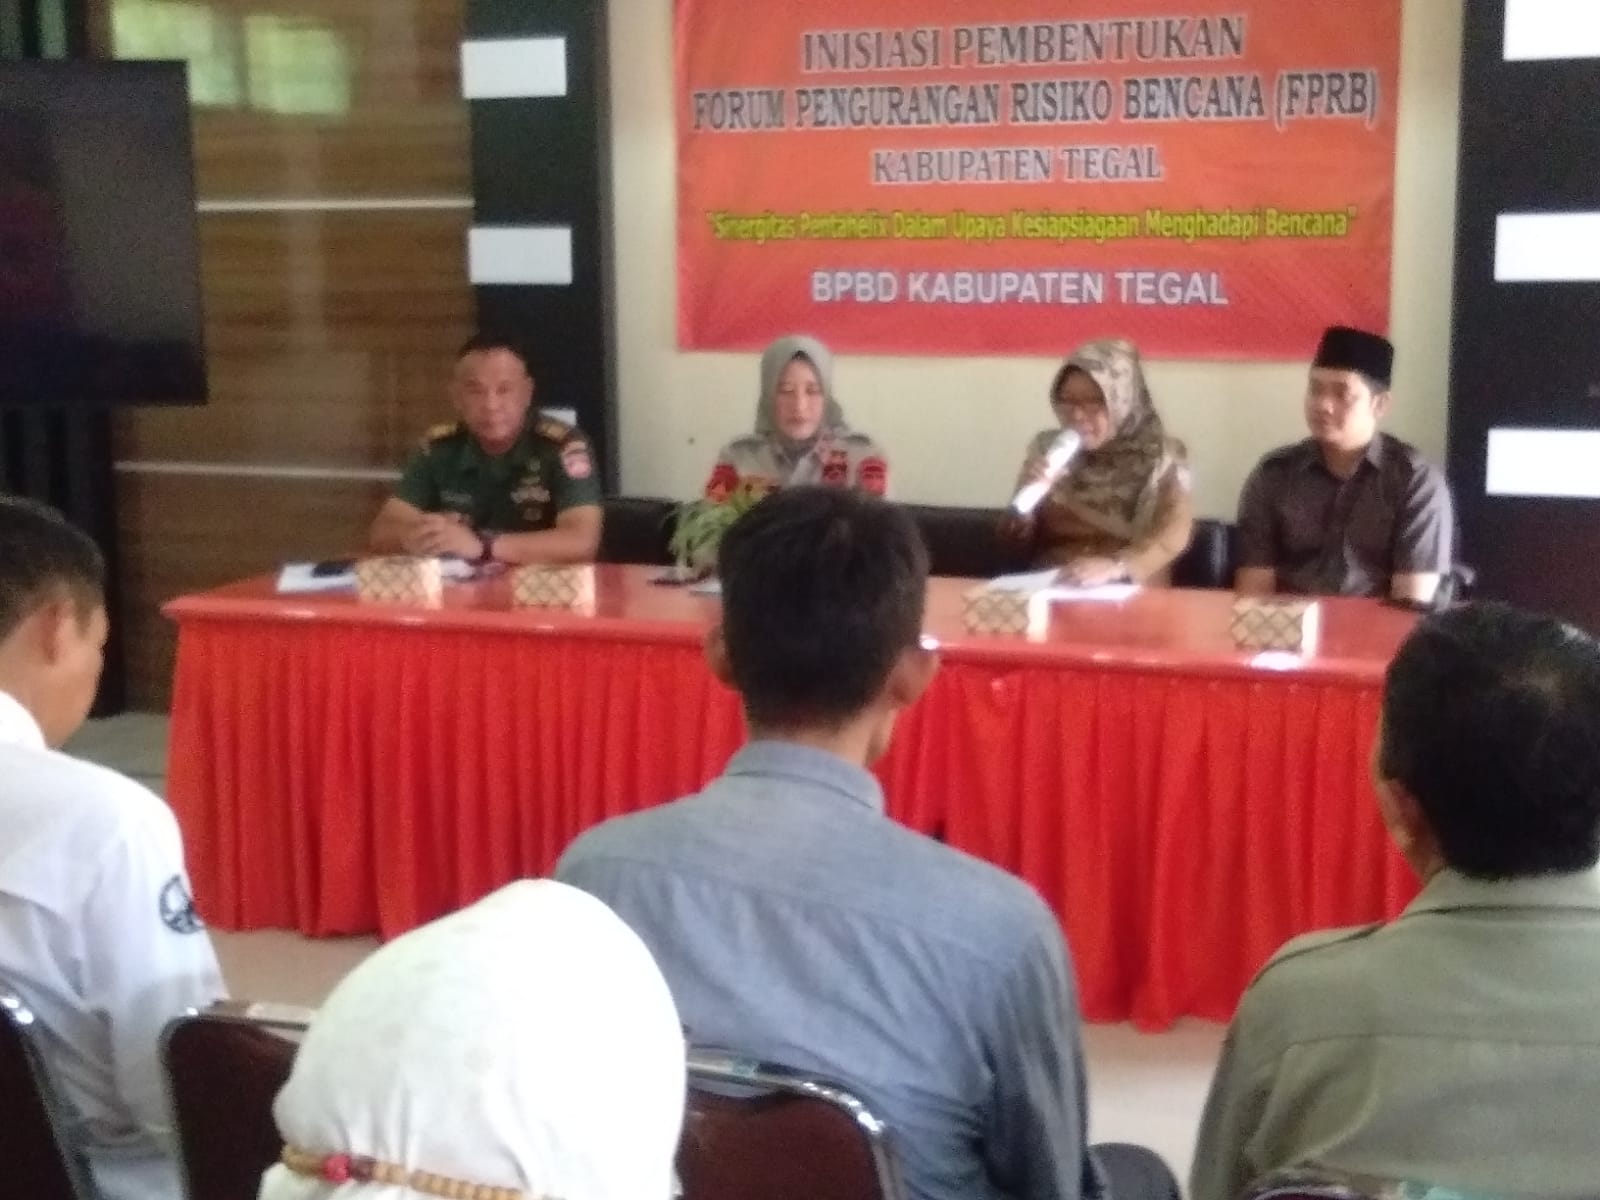 Gandeng Stakeholder, BPBD Kabupaten Tegal Bentuk Forum Pengurangan Resiko Bencana